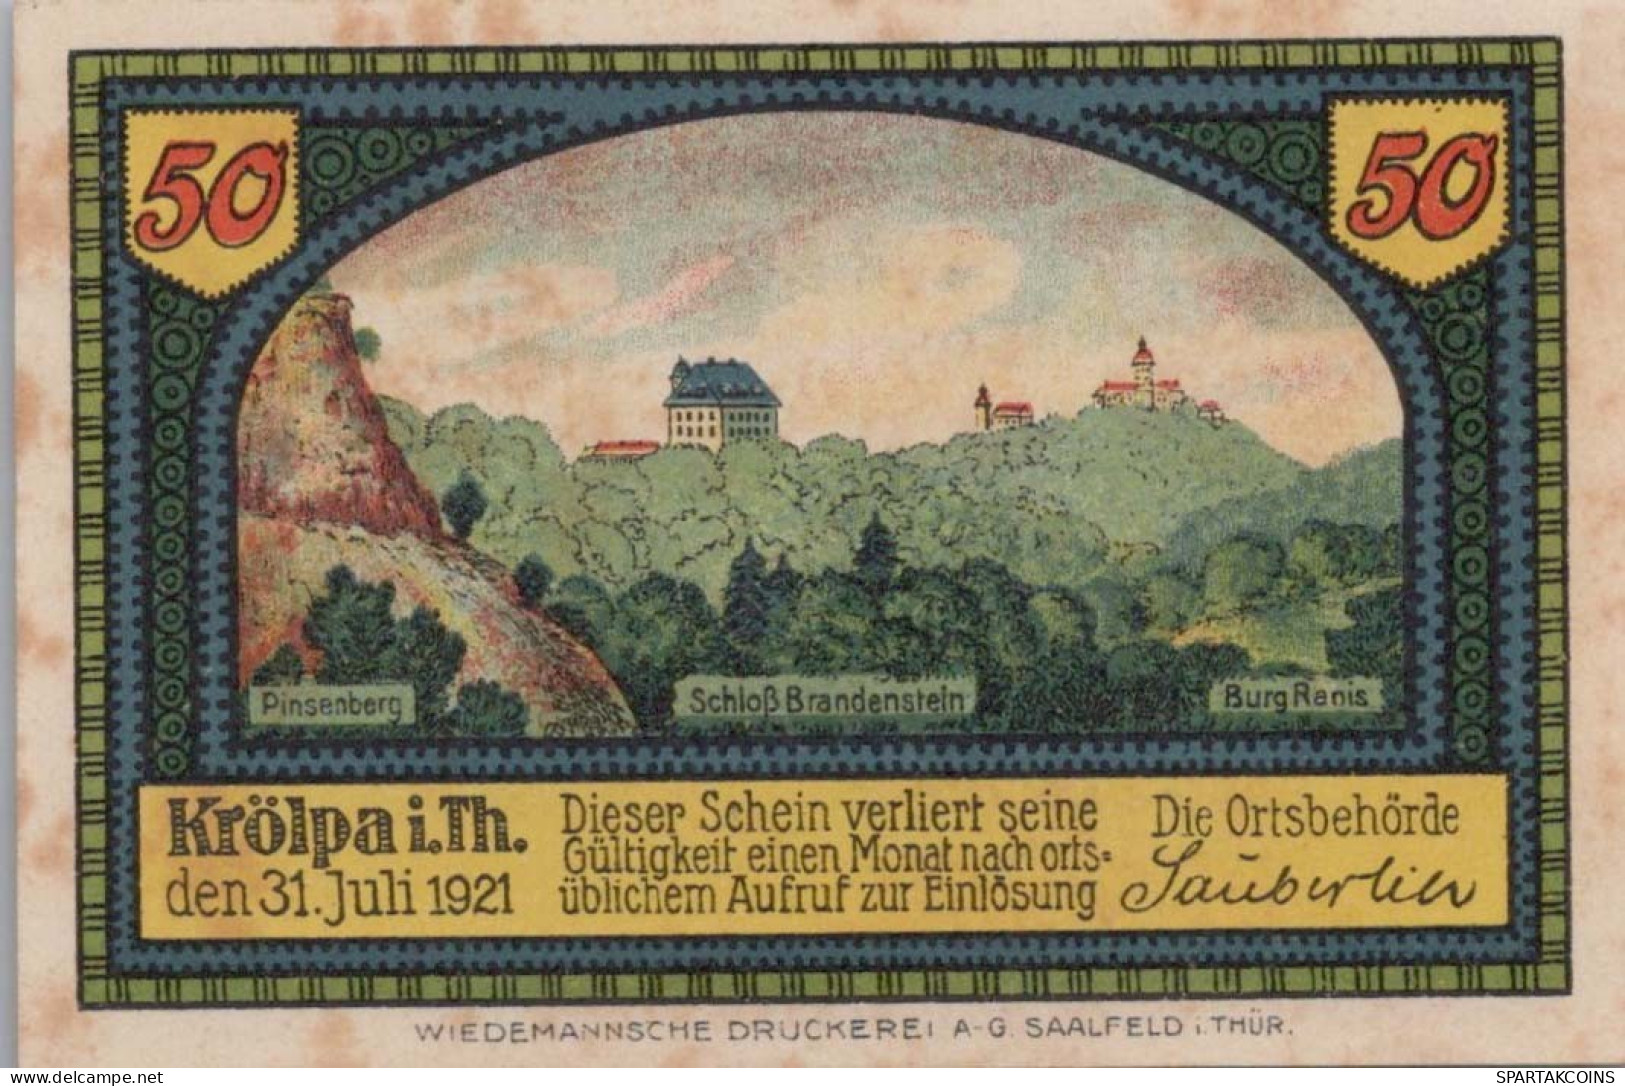 50 PFENNIG 1921 Stadt KRoLPA Saxony UNC DEUTSCHLAND Notgeld Banknote #PH648 - [11] Emissions Locales